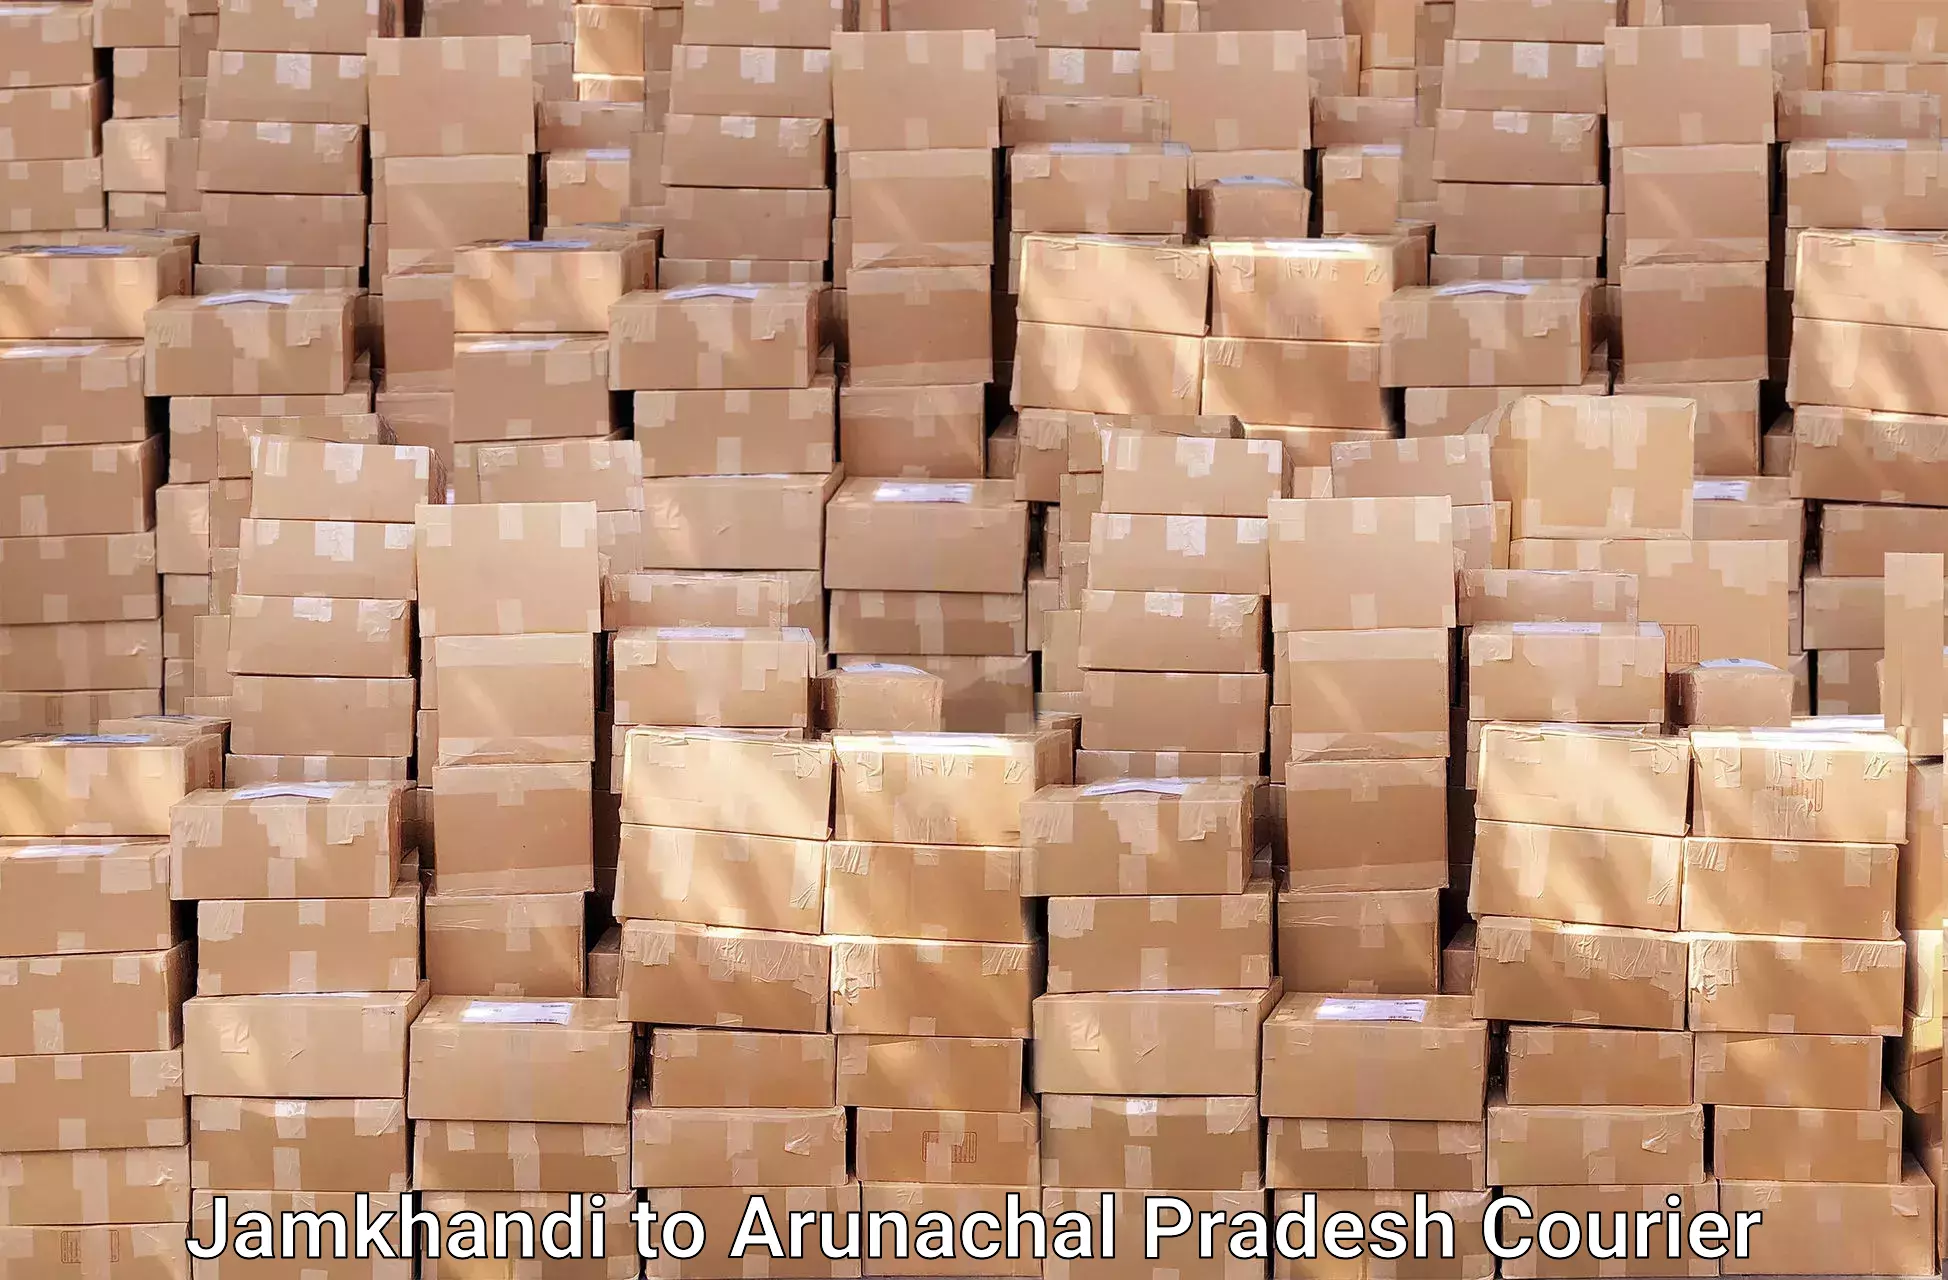 Furniture moving assistance Jamkhandi to Arunachal Pradesh